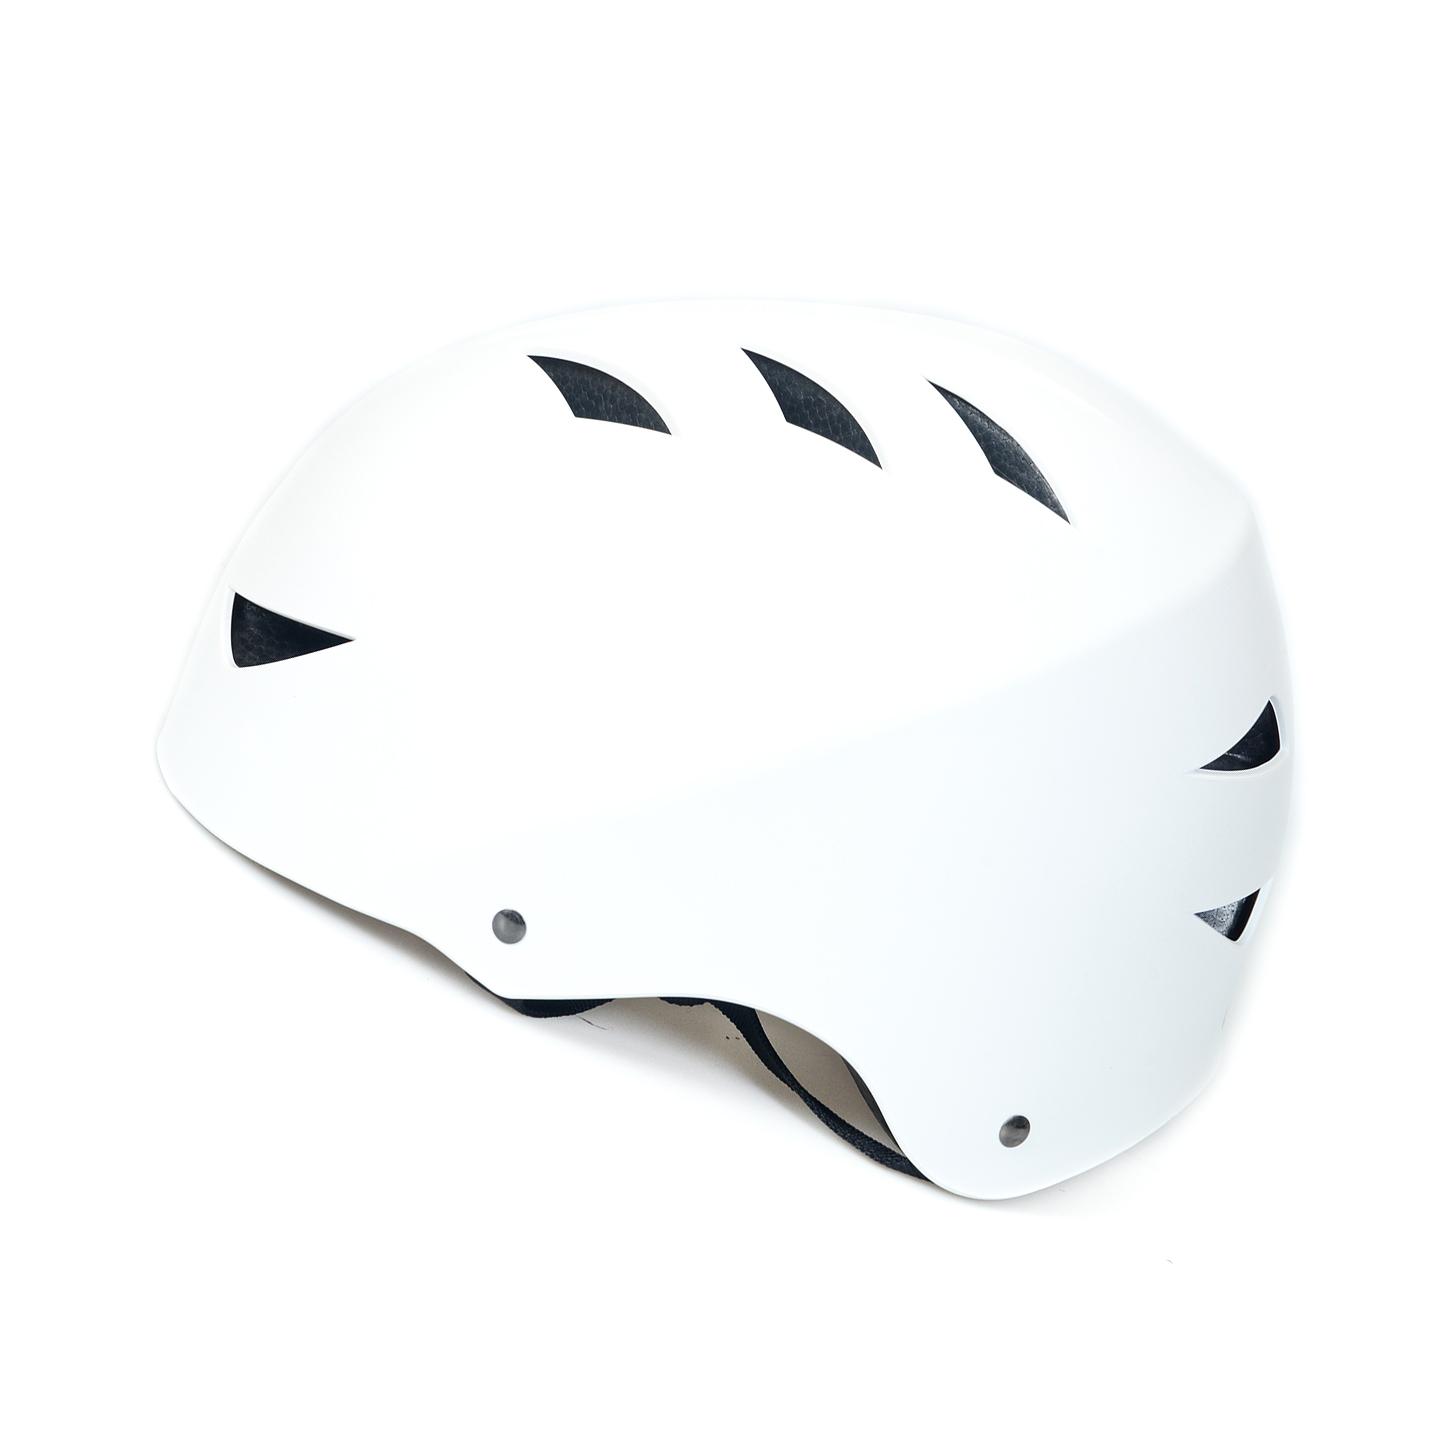 helmet for women